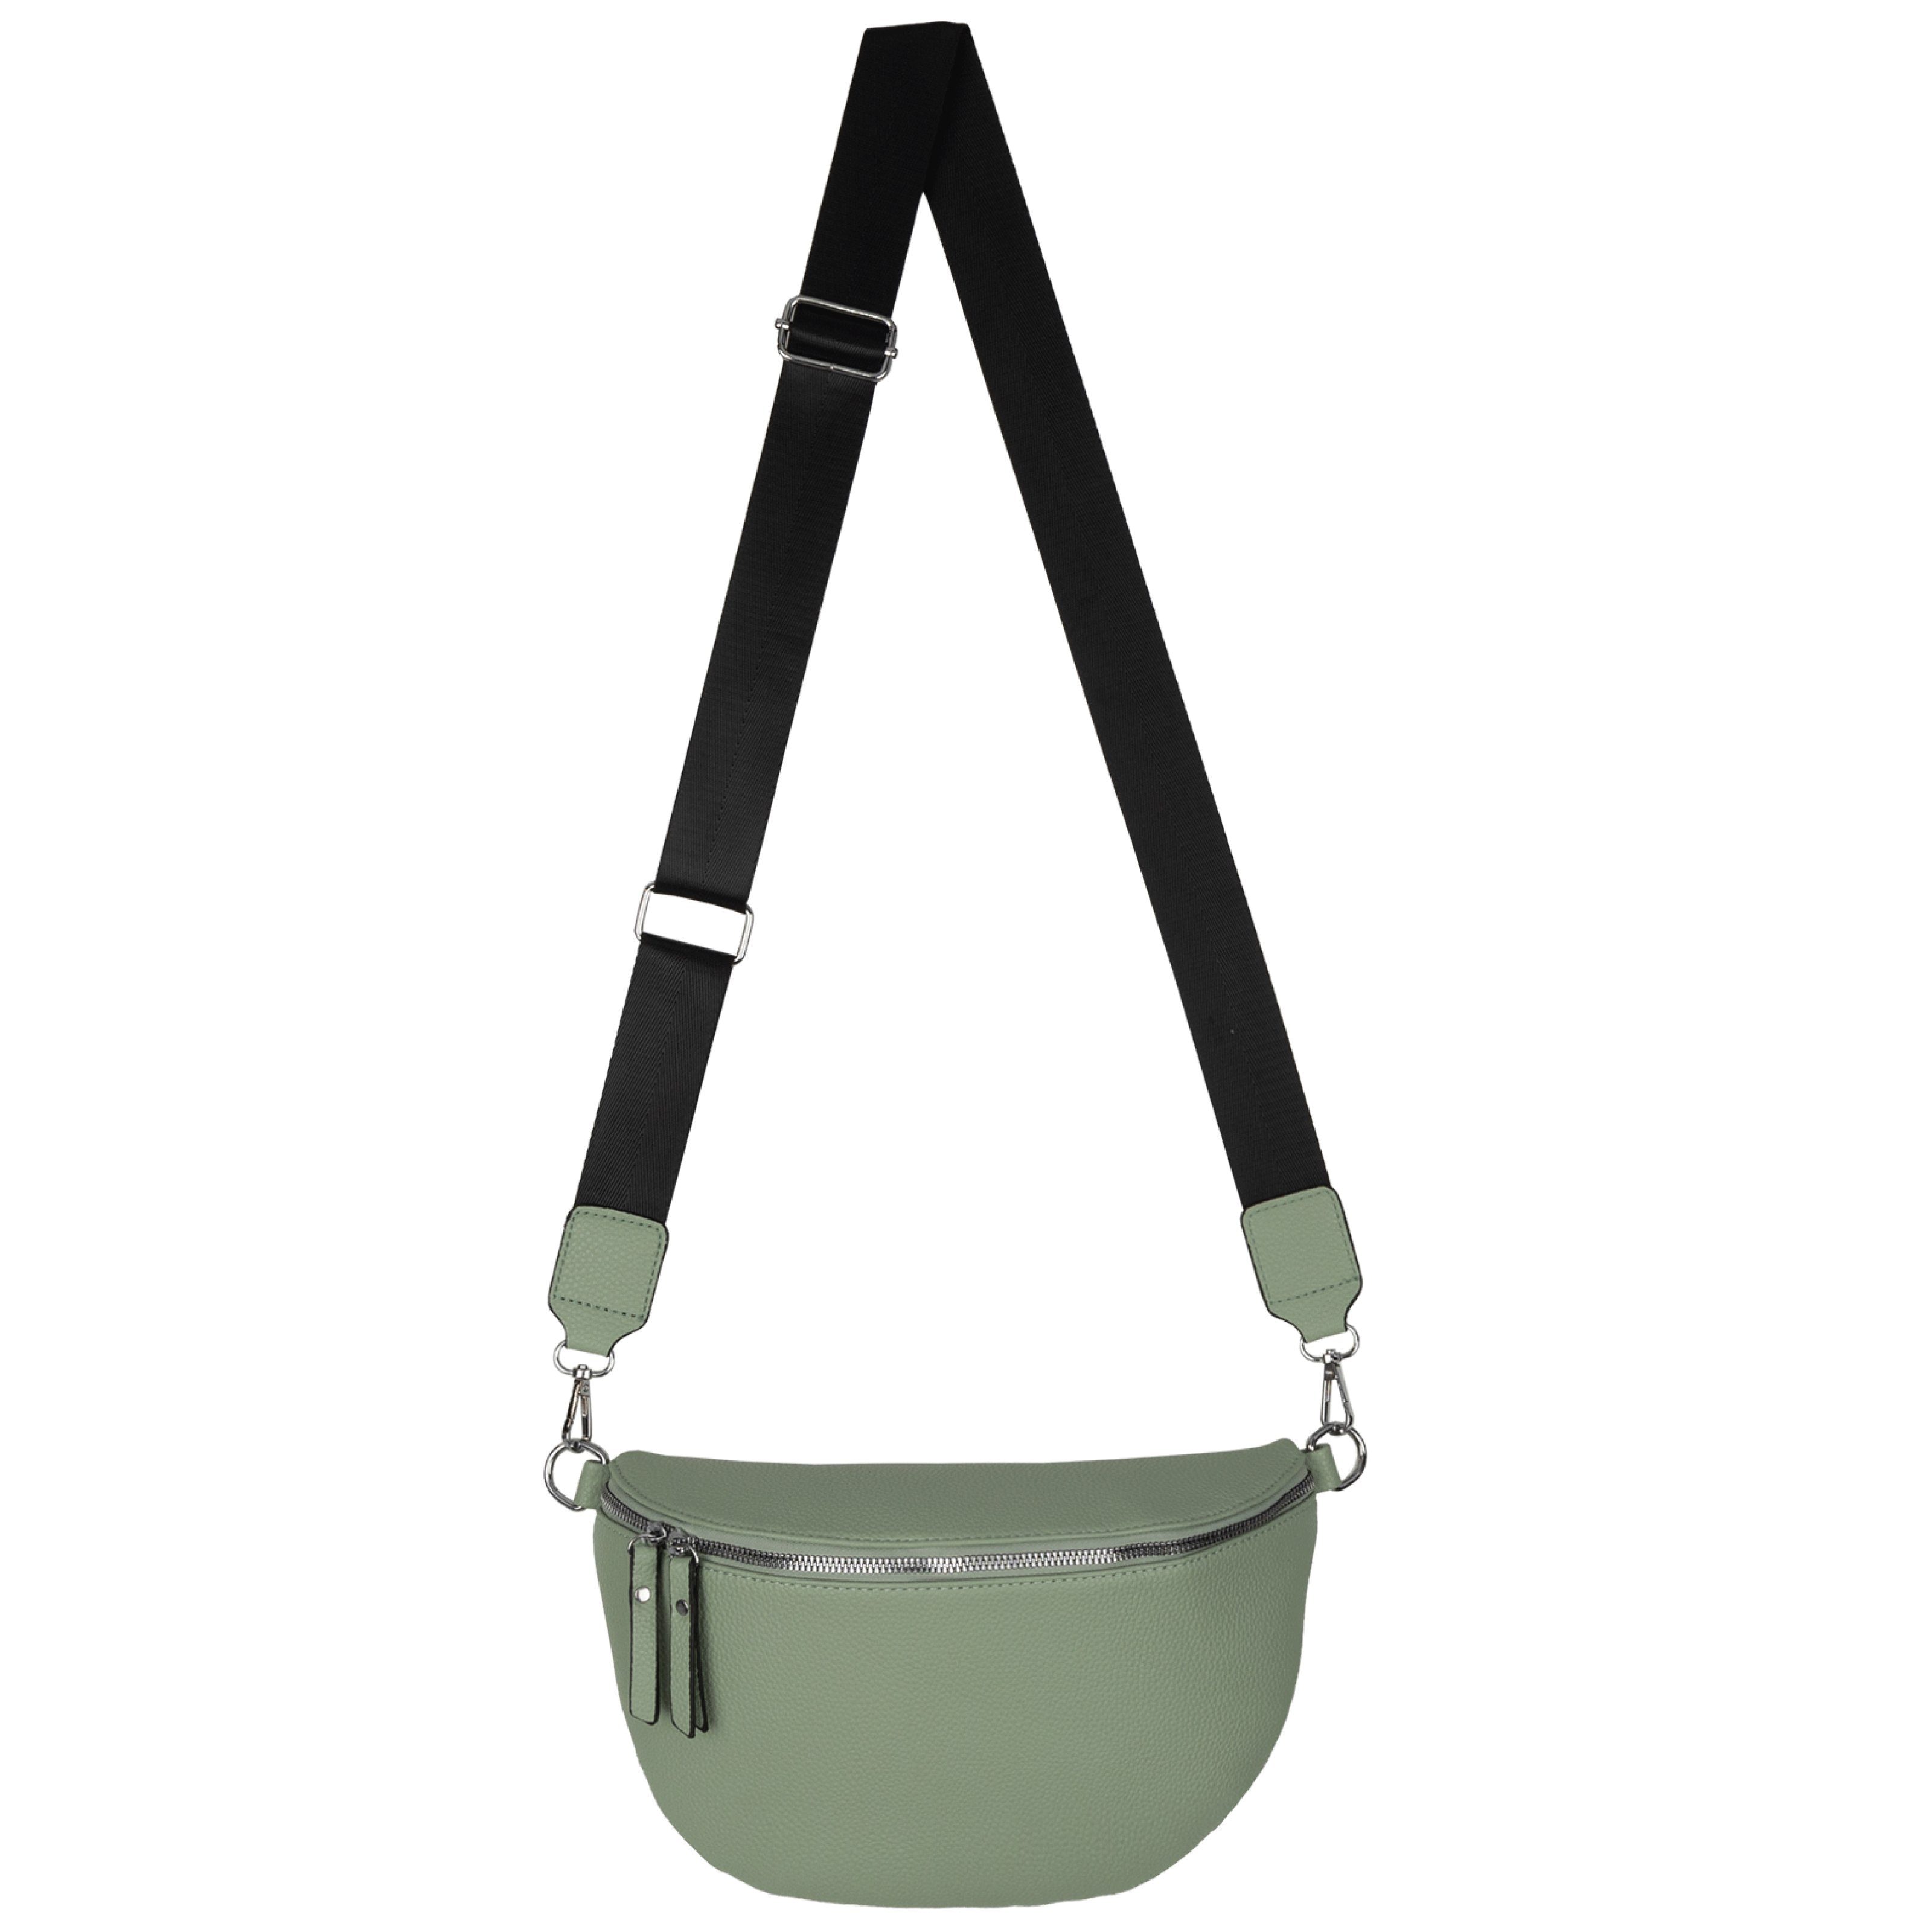 Hüfttasche Bauchtasche GREEN Gürteltasche CrossOver, Umhängetasche XL Schultertasche, tragbar als Italy, Kunstleder Crossbody-Bag Umhängetasche EAAKIE